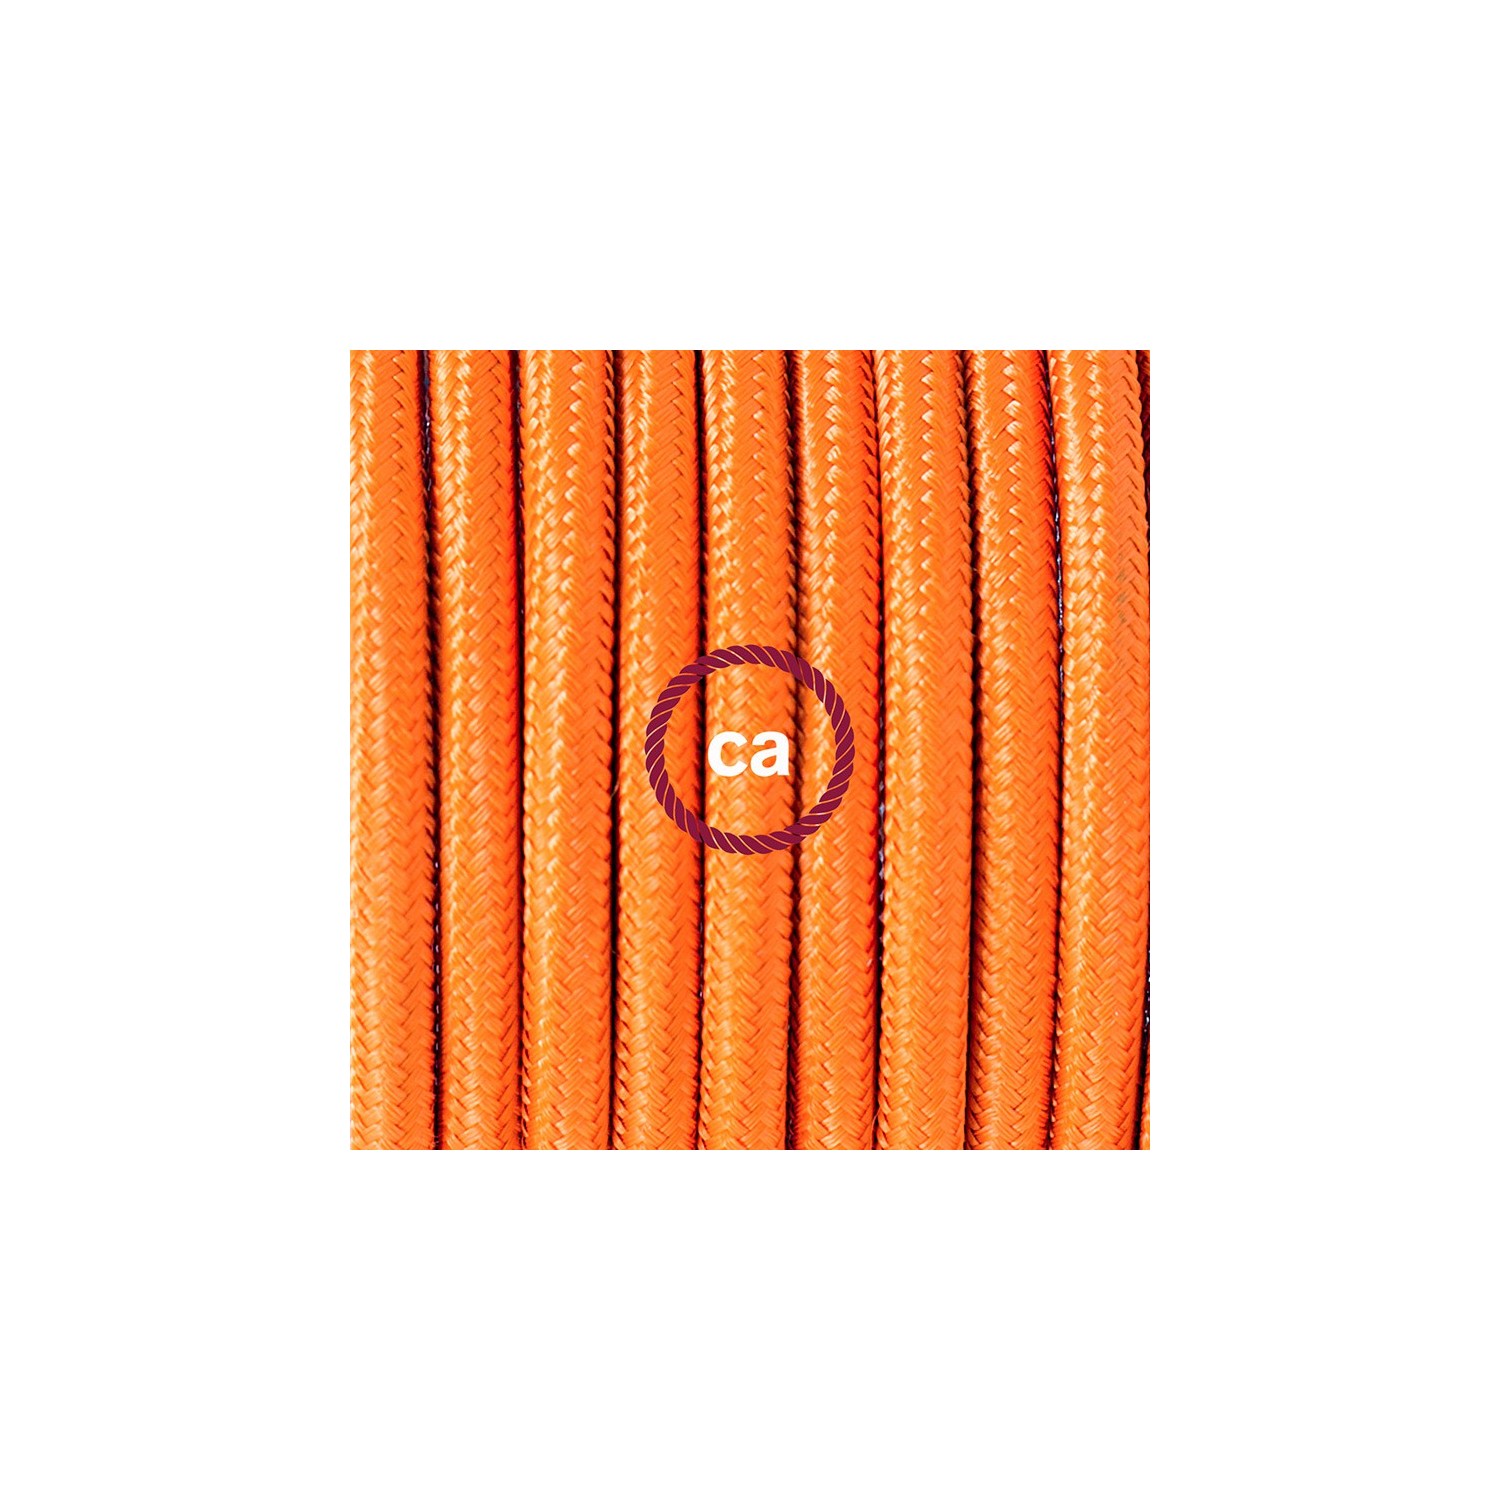 Stehleuchte Anschlussleitung RM15 Orange Seideneffekt 3 m. Wählen Sie aus drei Farben bei Schalter und Stecke.